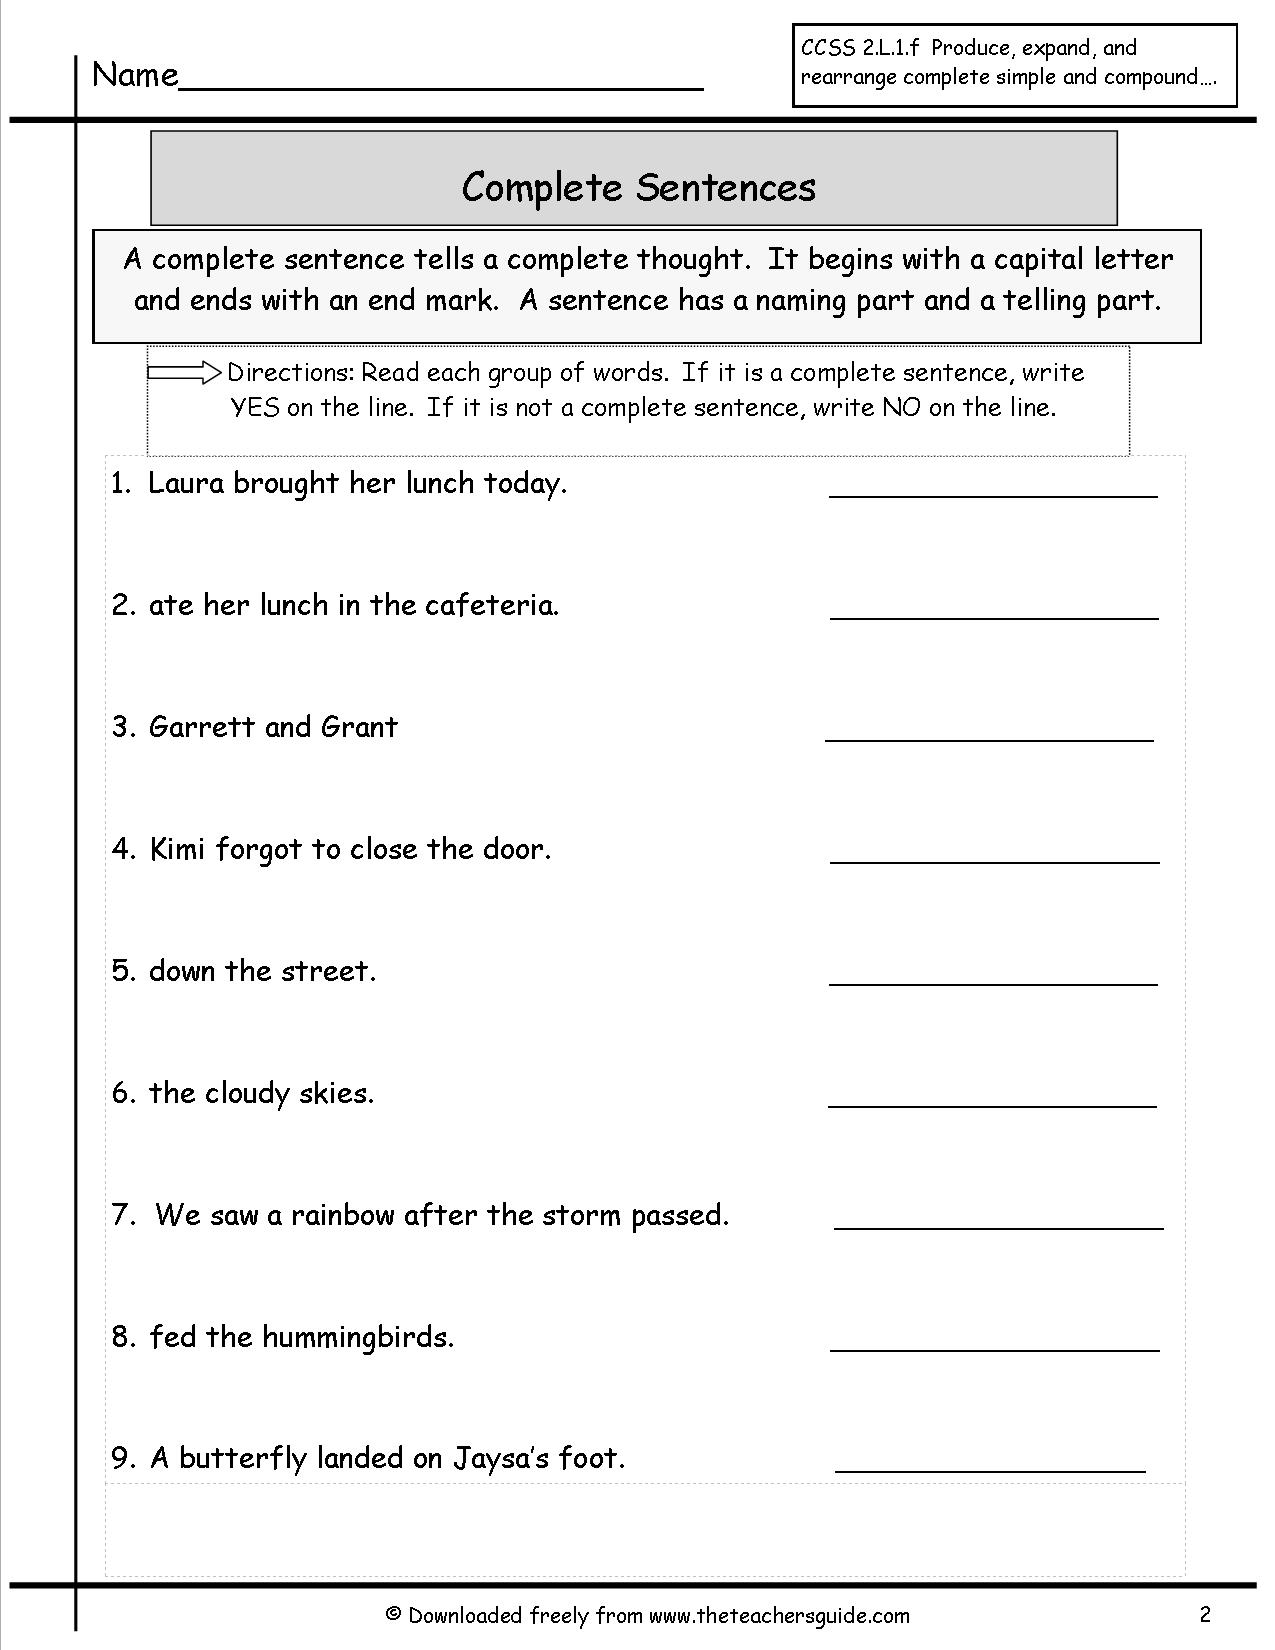 completing-sentences-worksheet